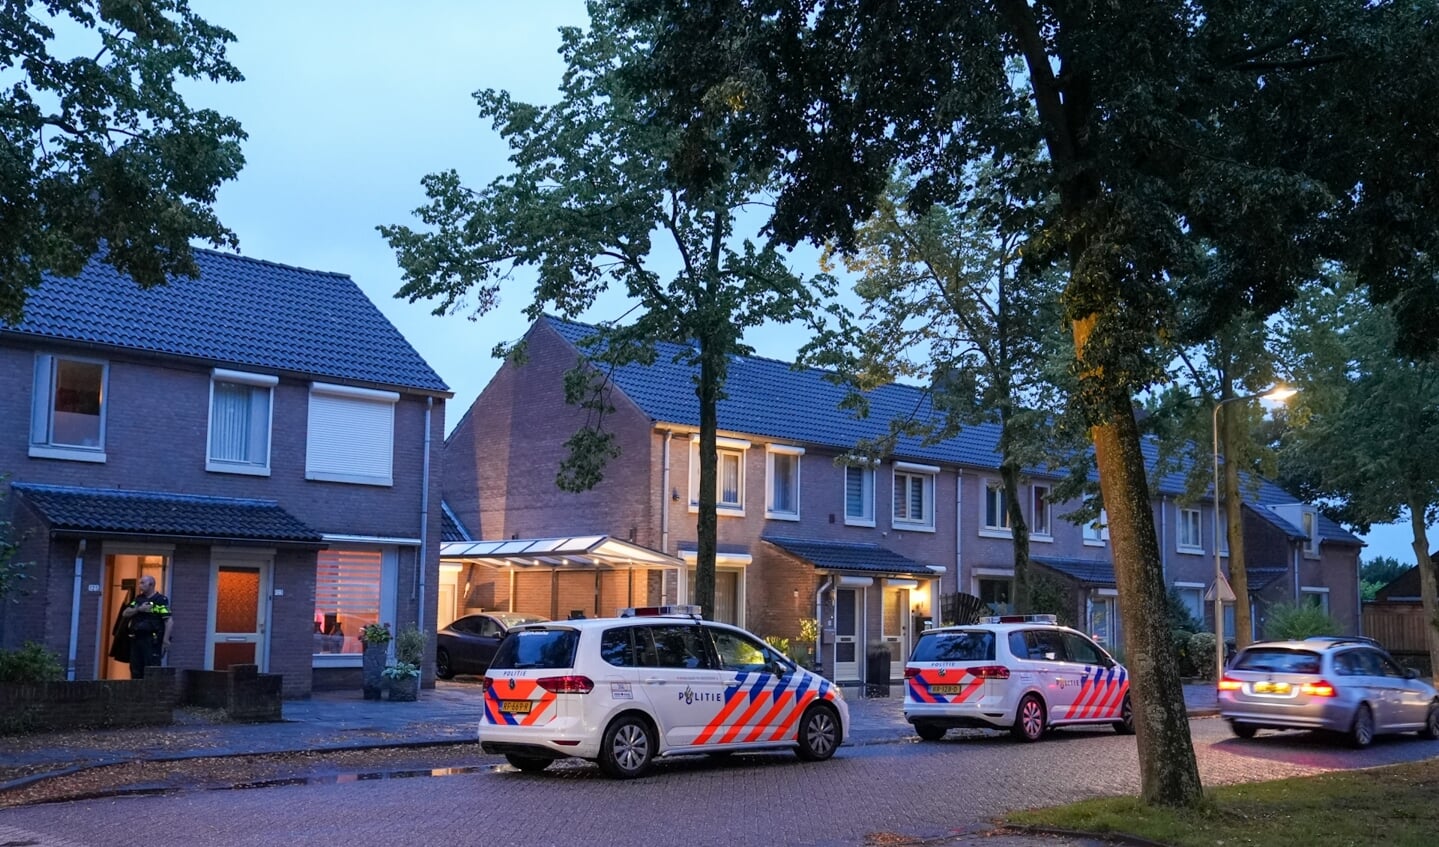 Schietpartij in Kortfoortstraat, politie doet onderzoek. (Foto: Gabor Heeres, Foto Mallo)